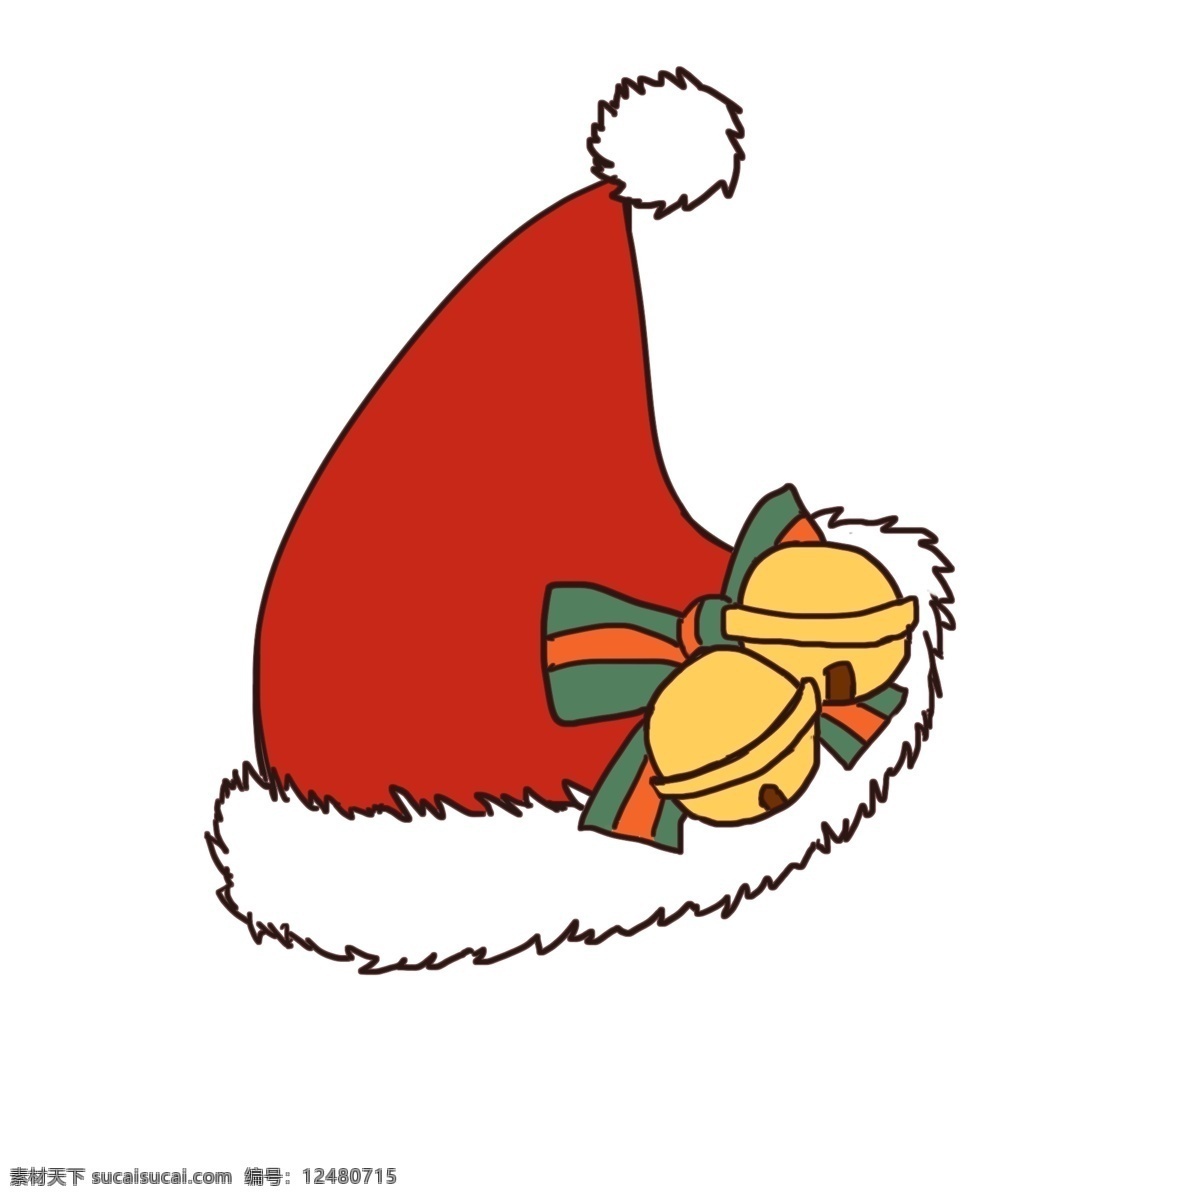 圣诞节 圣诞 帽 卡通 可爱 铃铛 节日 圣诞帽 原创 手绘风